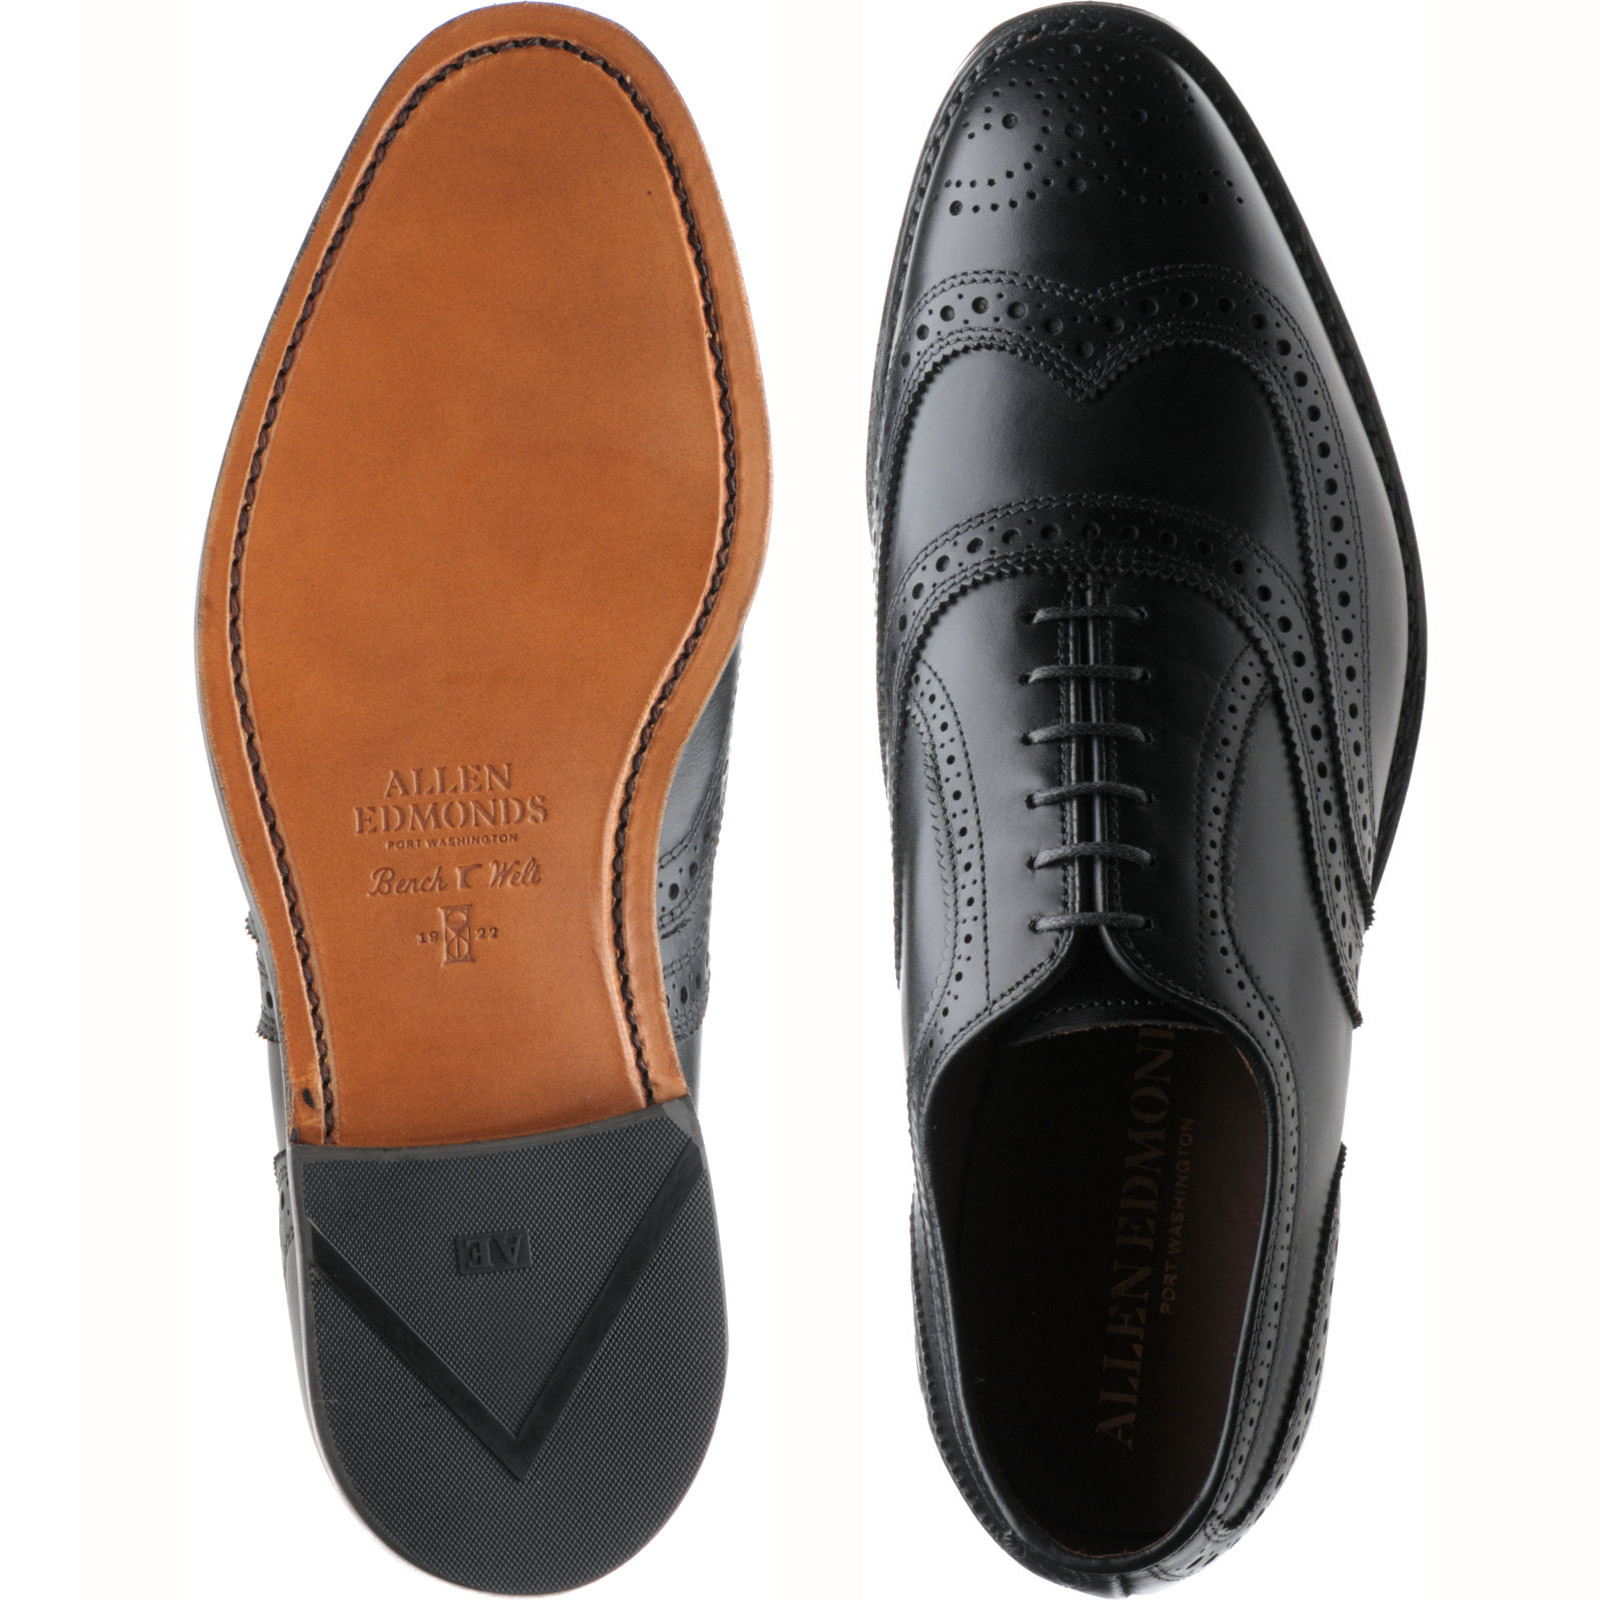 Allen Edmonds shoes | Allen Edmonds Sale | McAllister brogues in Black ...